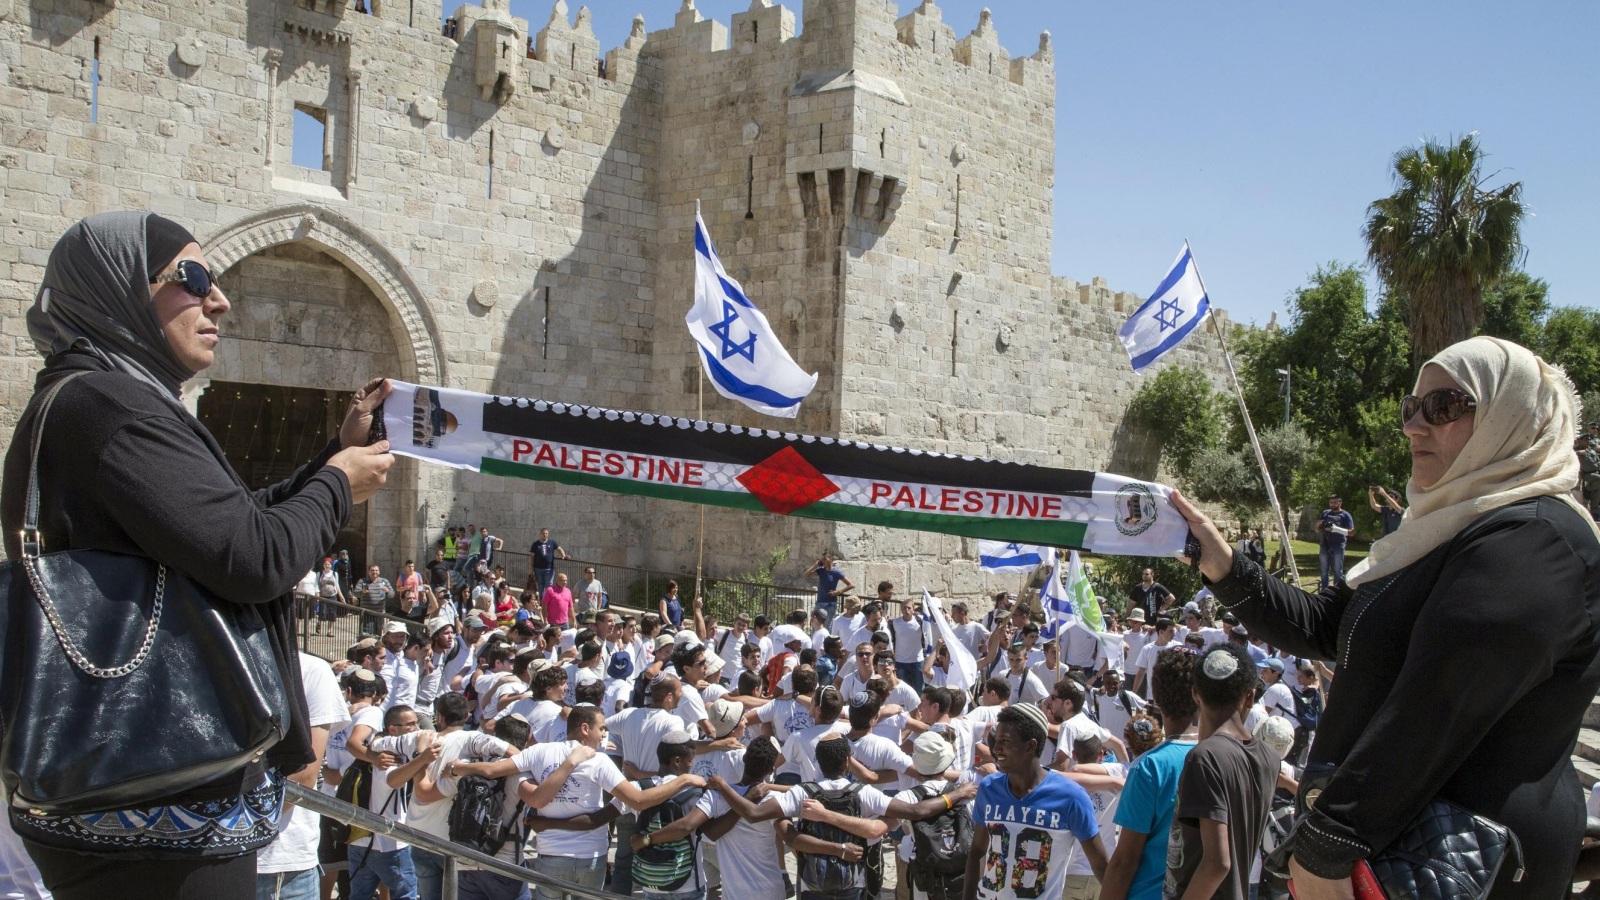 ‪صراع مستمر على هوية مدينة القدس والأقصى‬ صراع مستمر على هوية مدينة القدس والأقصى (غيتي)